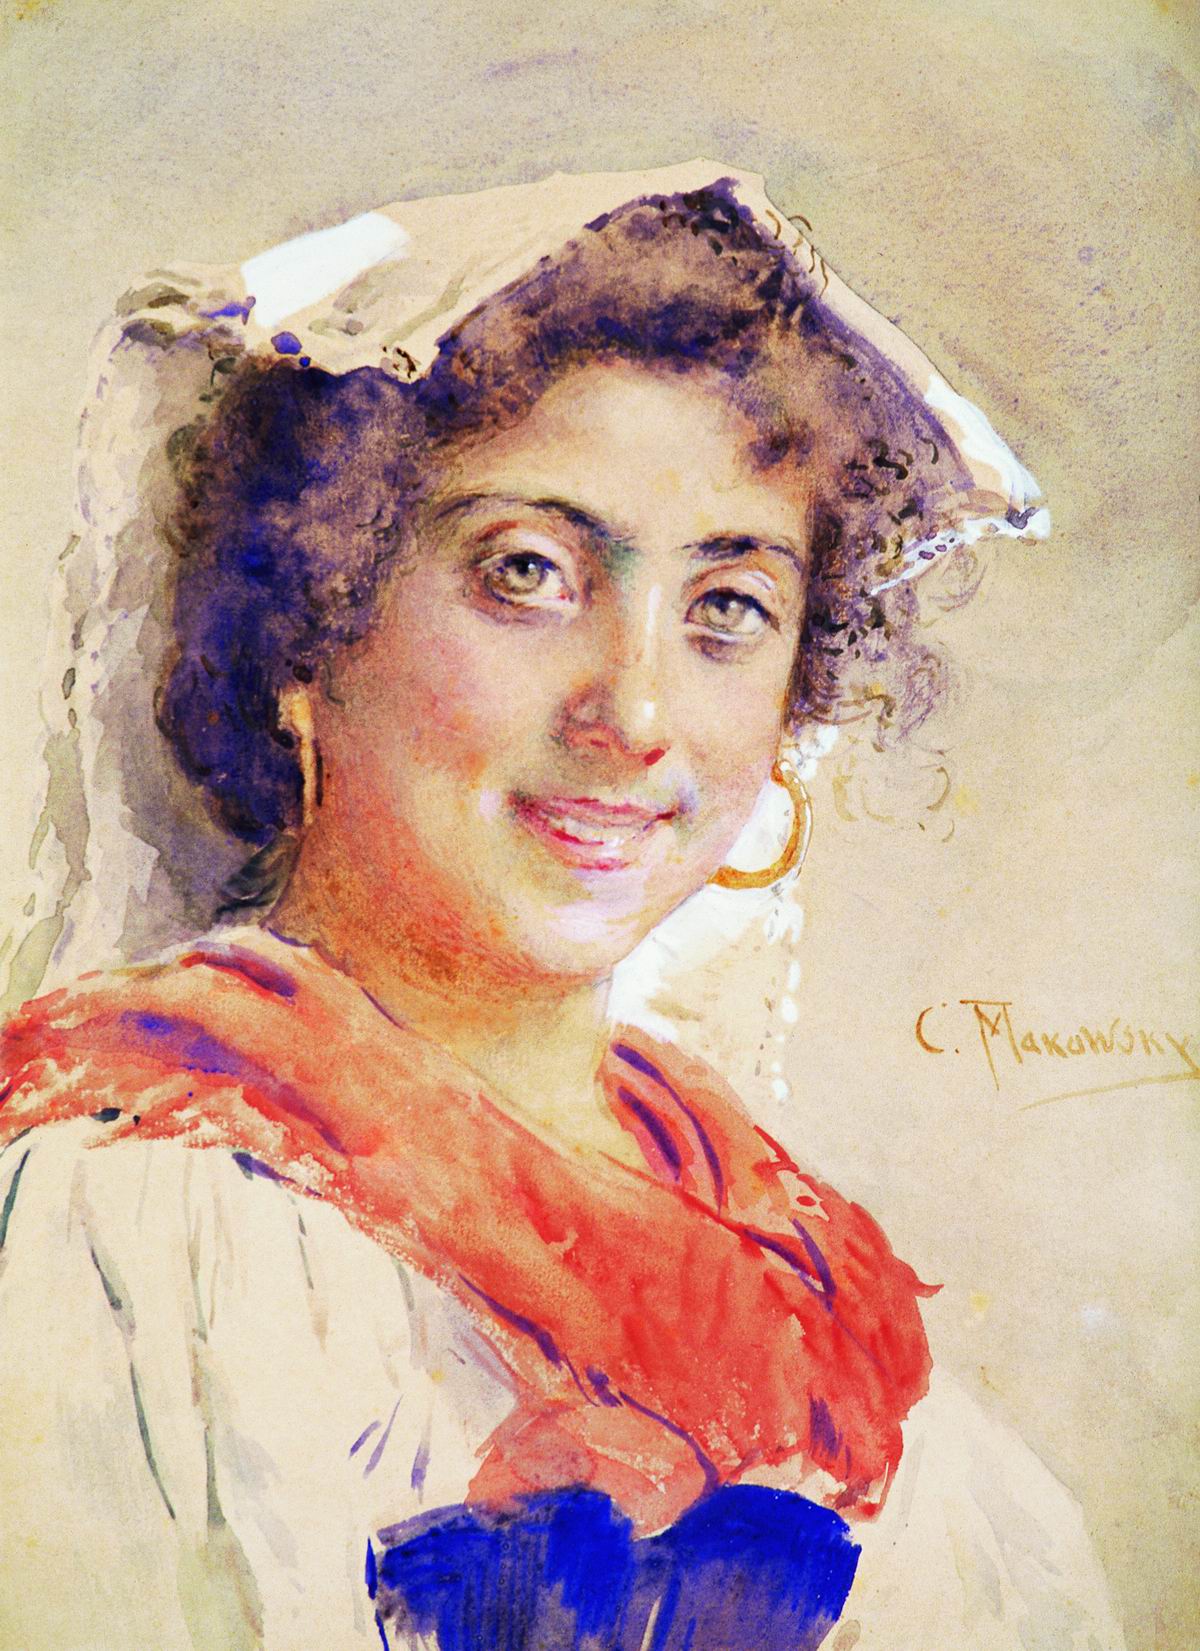 Маковский К.. Итальянка. 1890-е